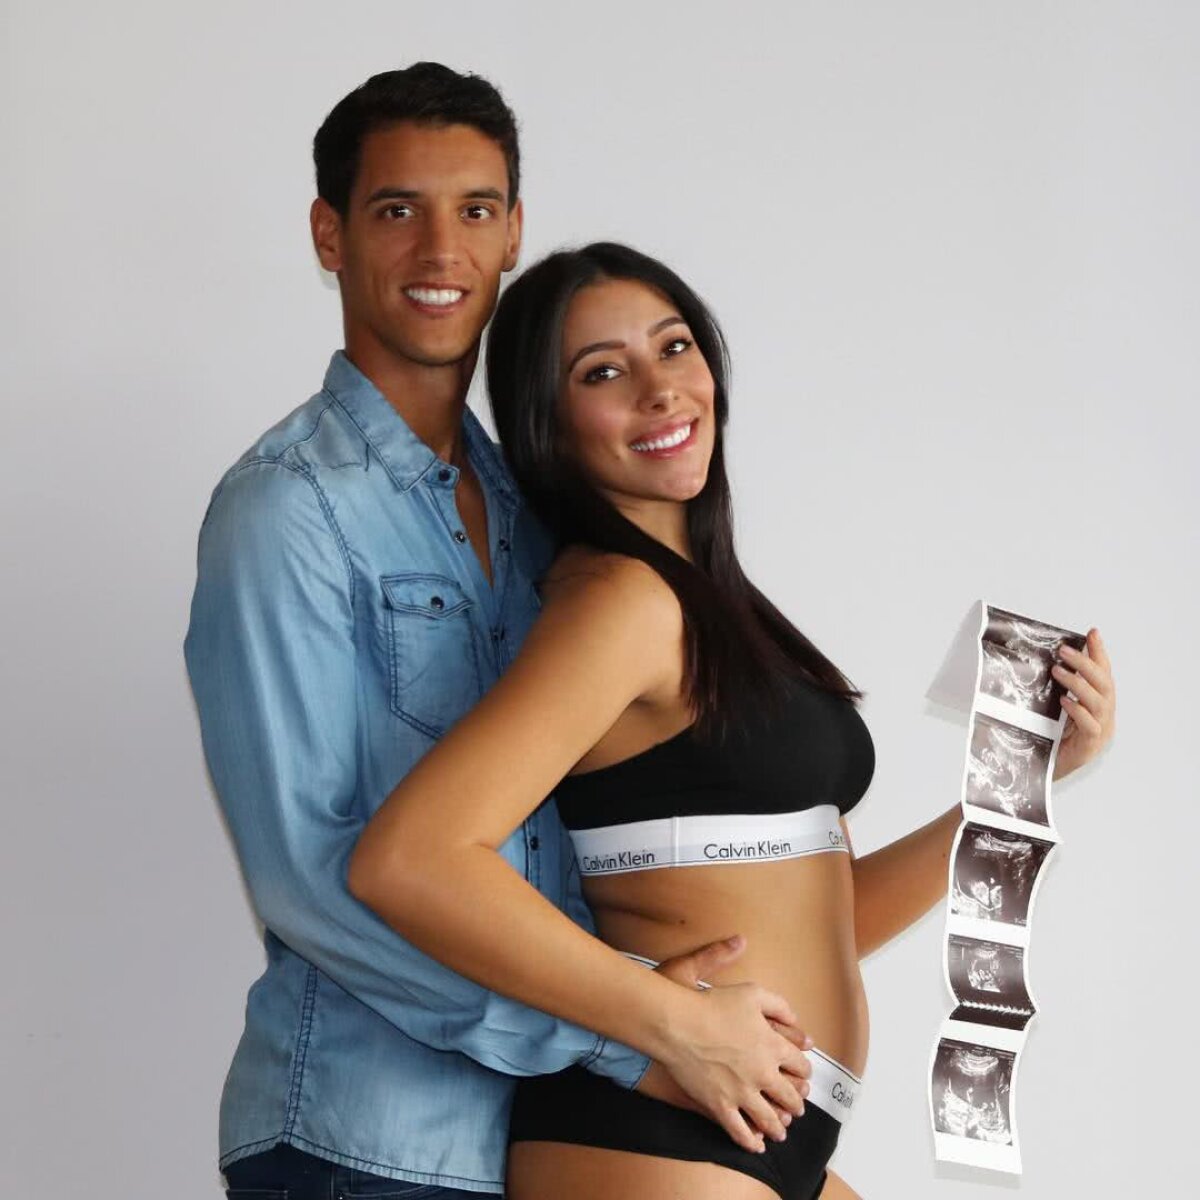 FOTO Iubita lui Salomao, însărcinată și superbă » Bruneta Sara, poreclită "Kim Kardashian", s-a pozat în lenjerie intimă